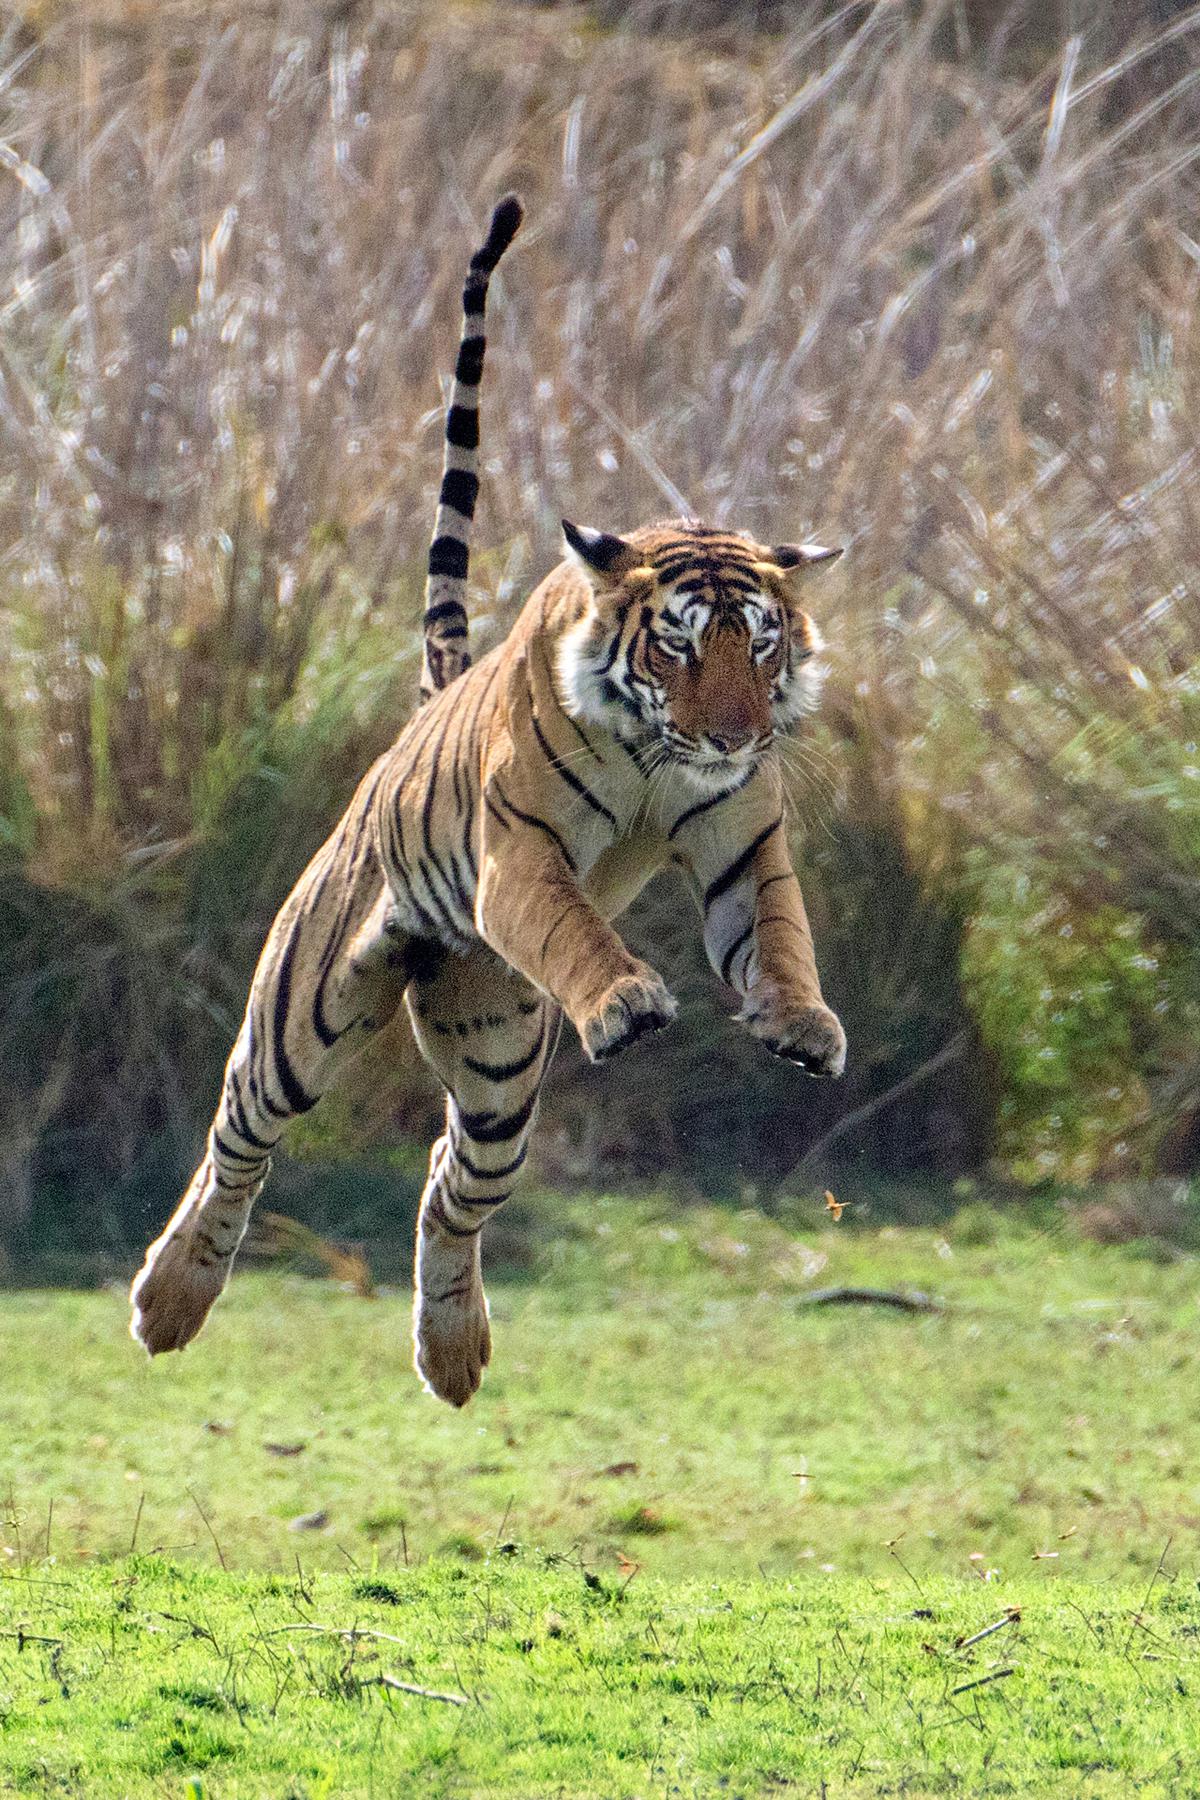 Tiger Jumping.